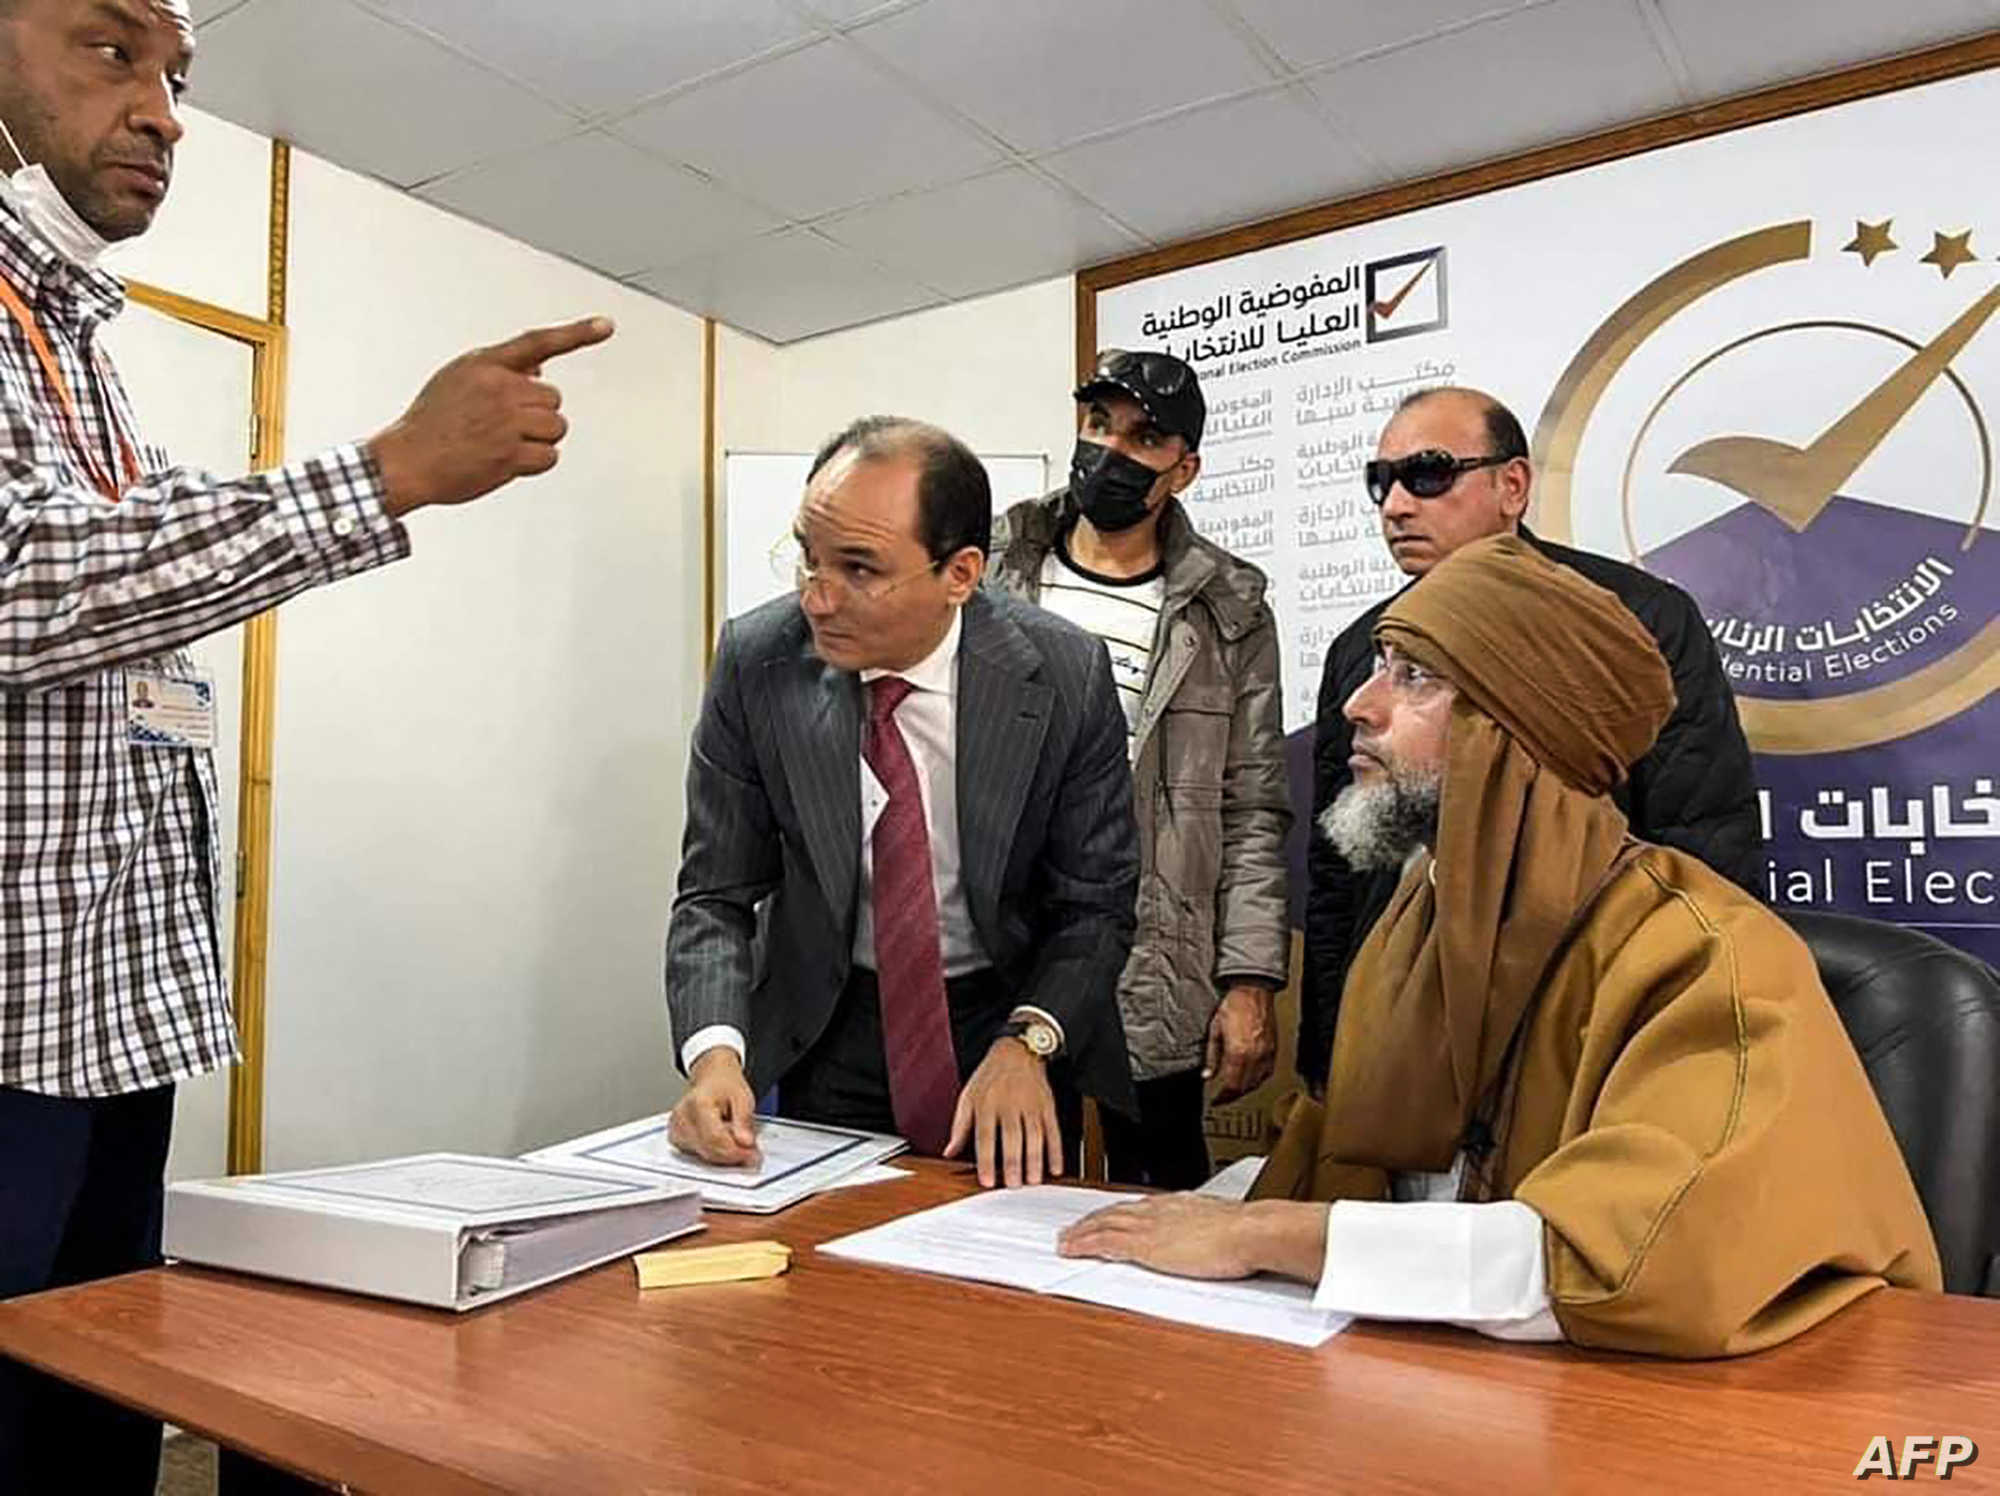 ليبيون يغلقون مراكز تصويت بسبب ترشح ابن القذافي